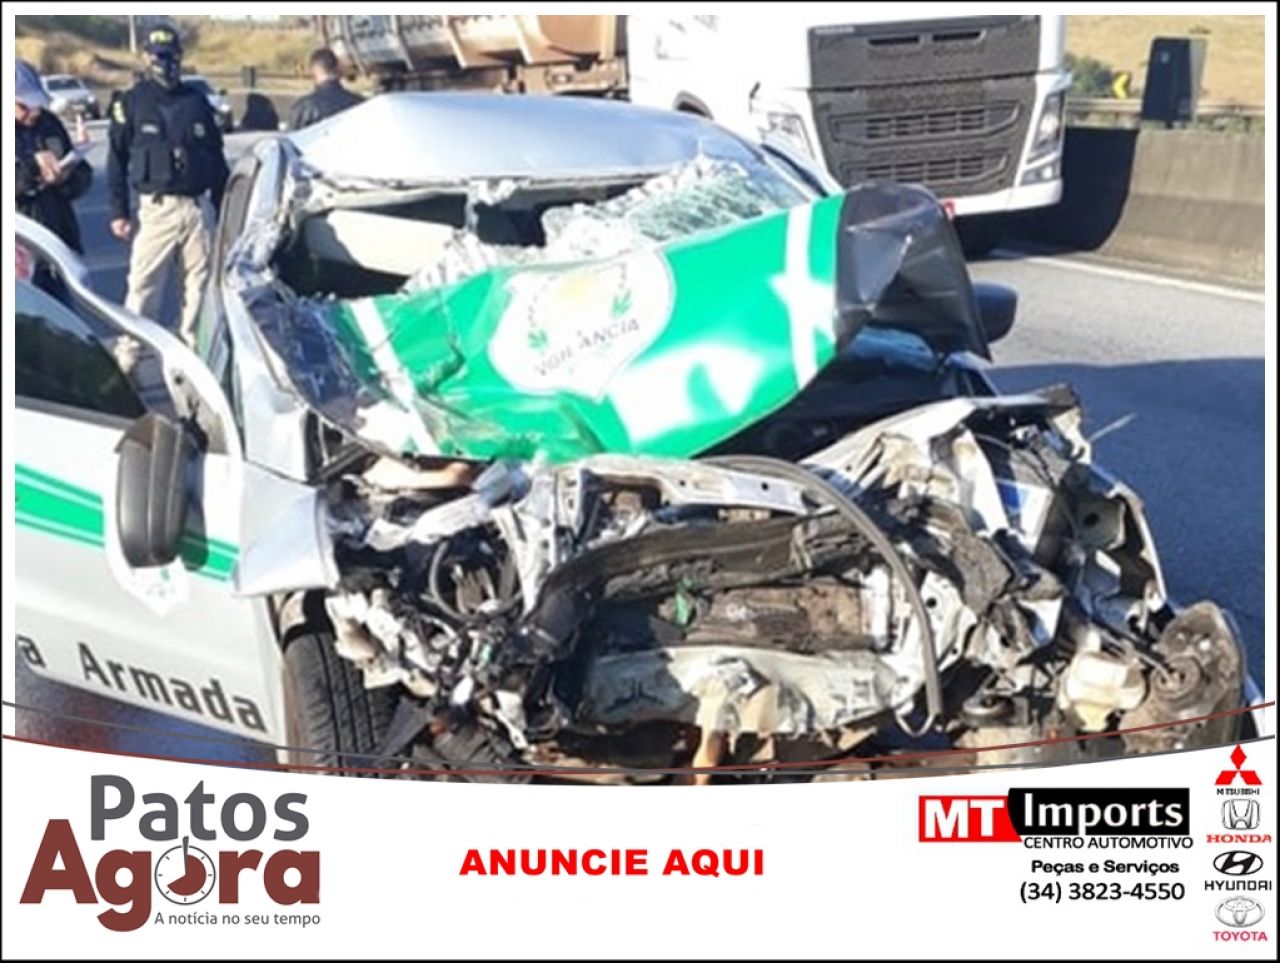 Motorista de escolta armada de Patos de Minas morre em acidente na rodovia Fernão Dias